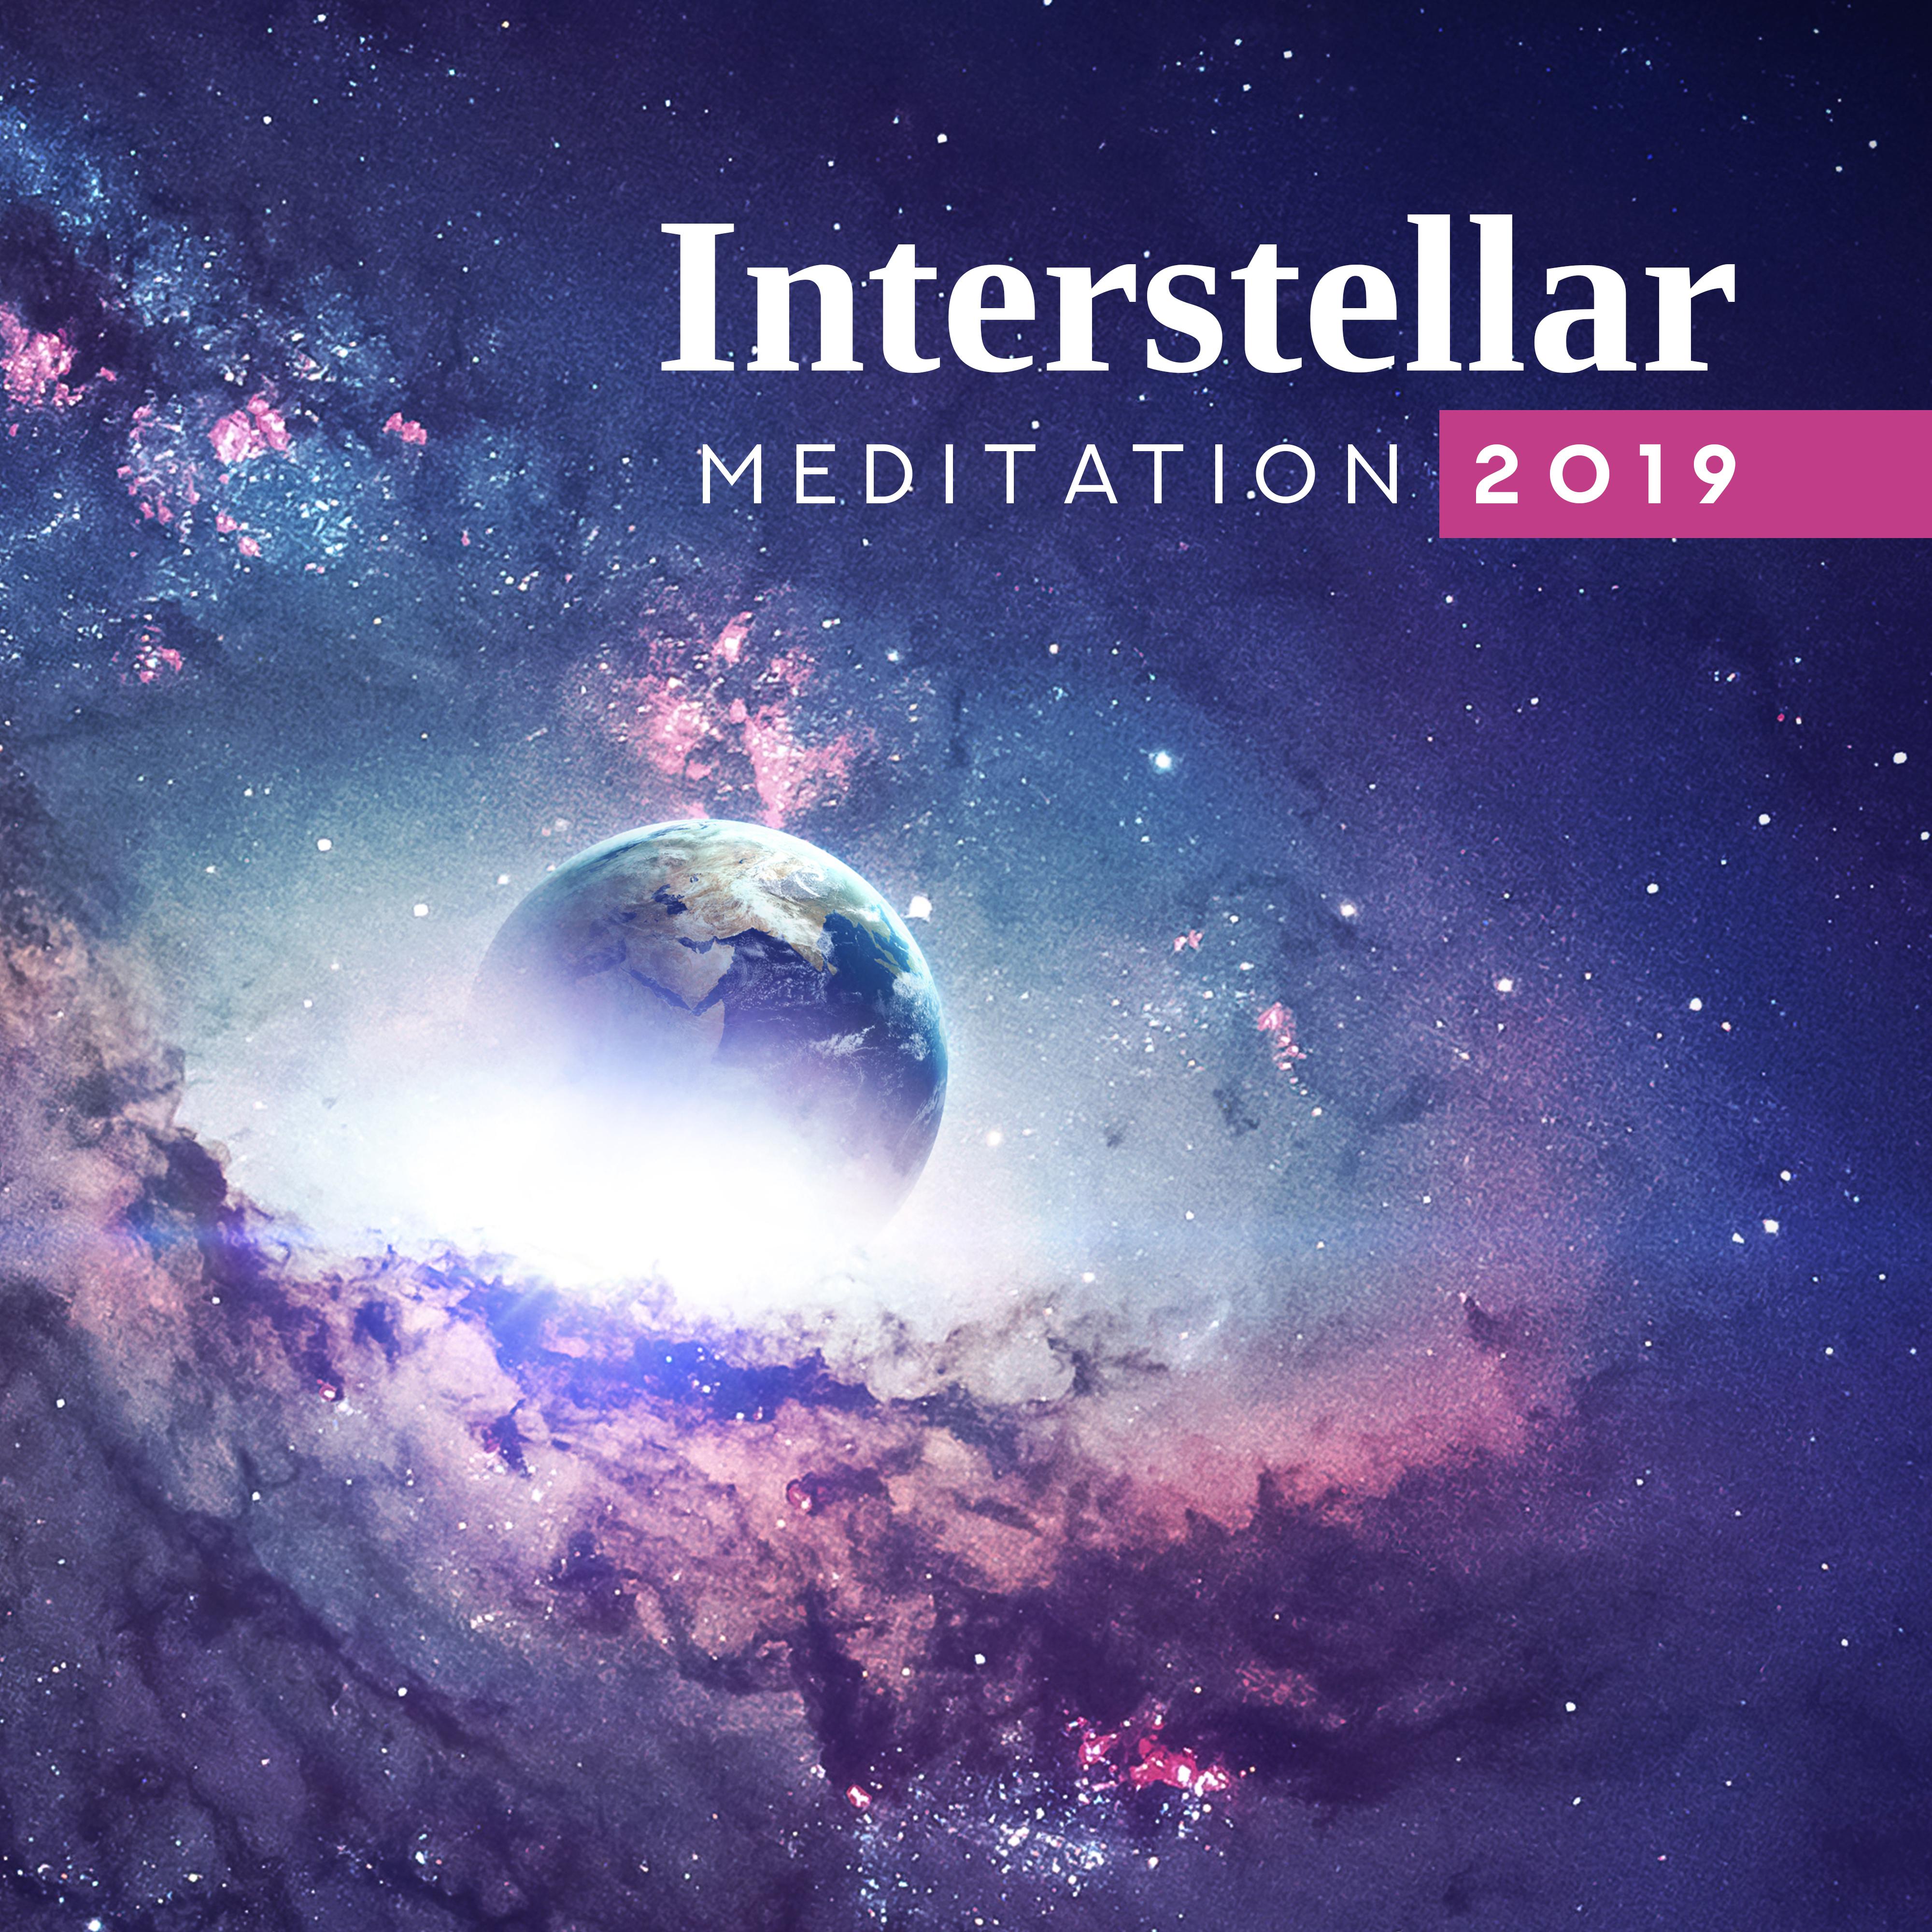 Interstellar Meditation 2019